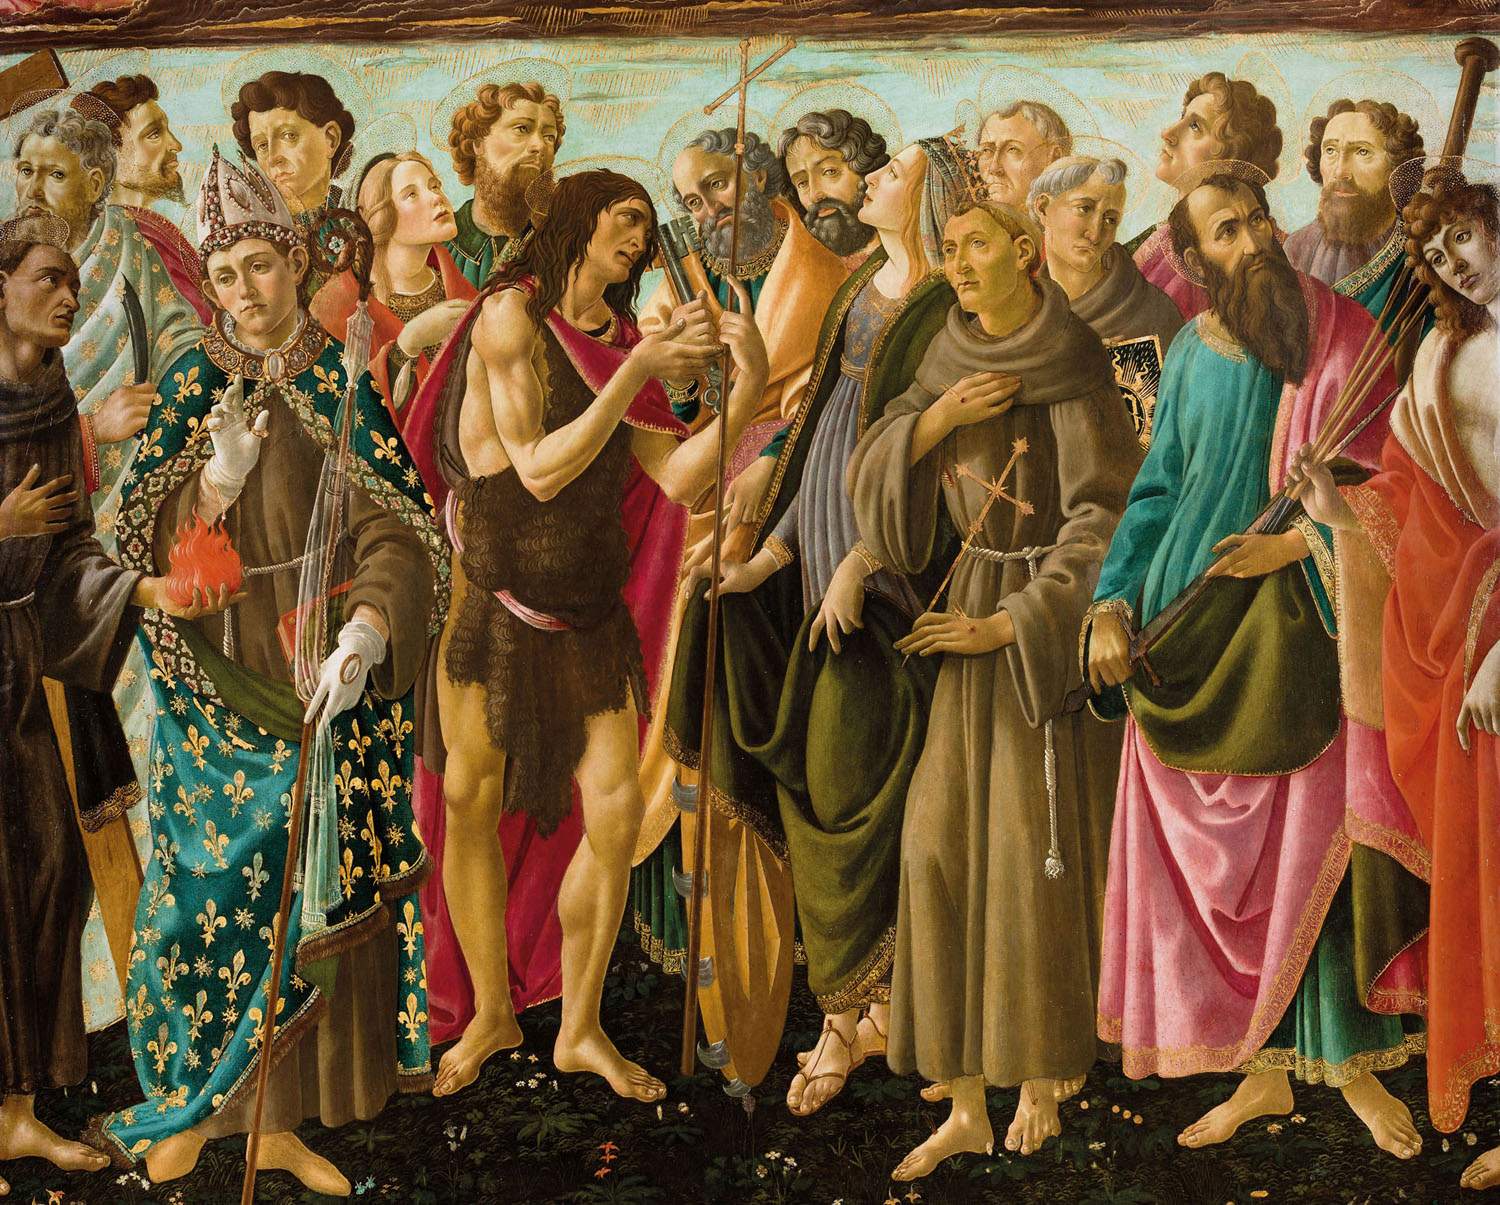 Botticelli revient chez lui après deux siècles. Une exposition à Montevarchi ramène des œuvres du territoire